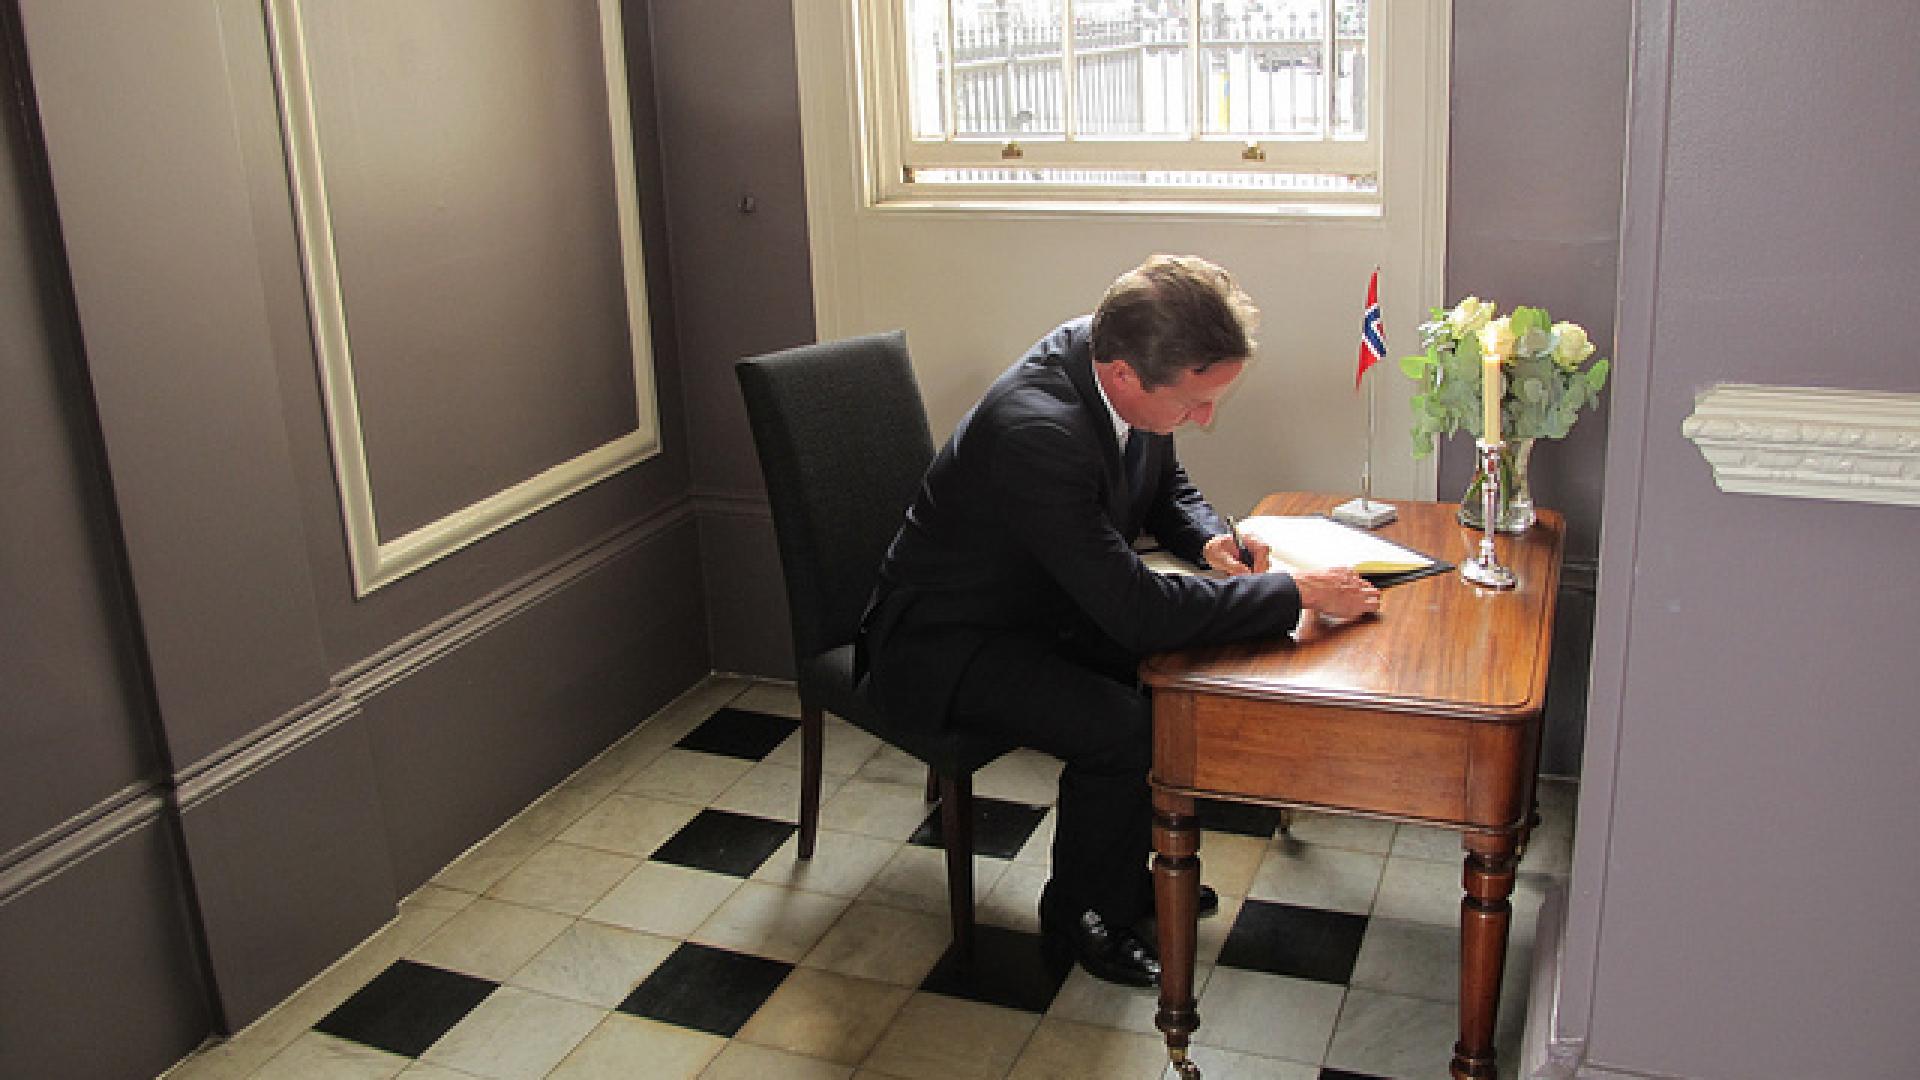 David Cameron at a desk